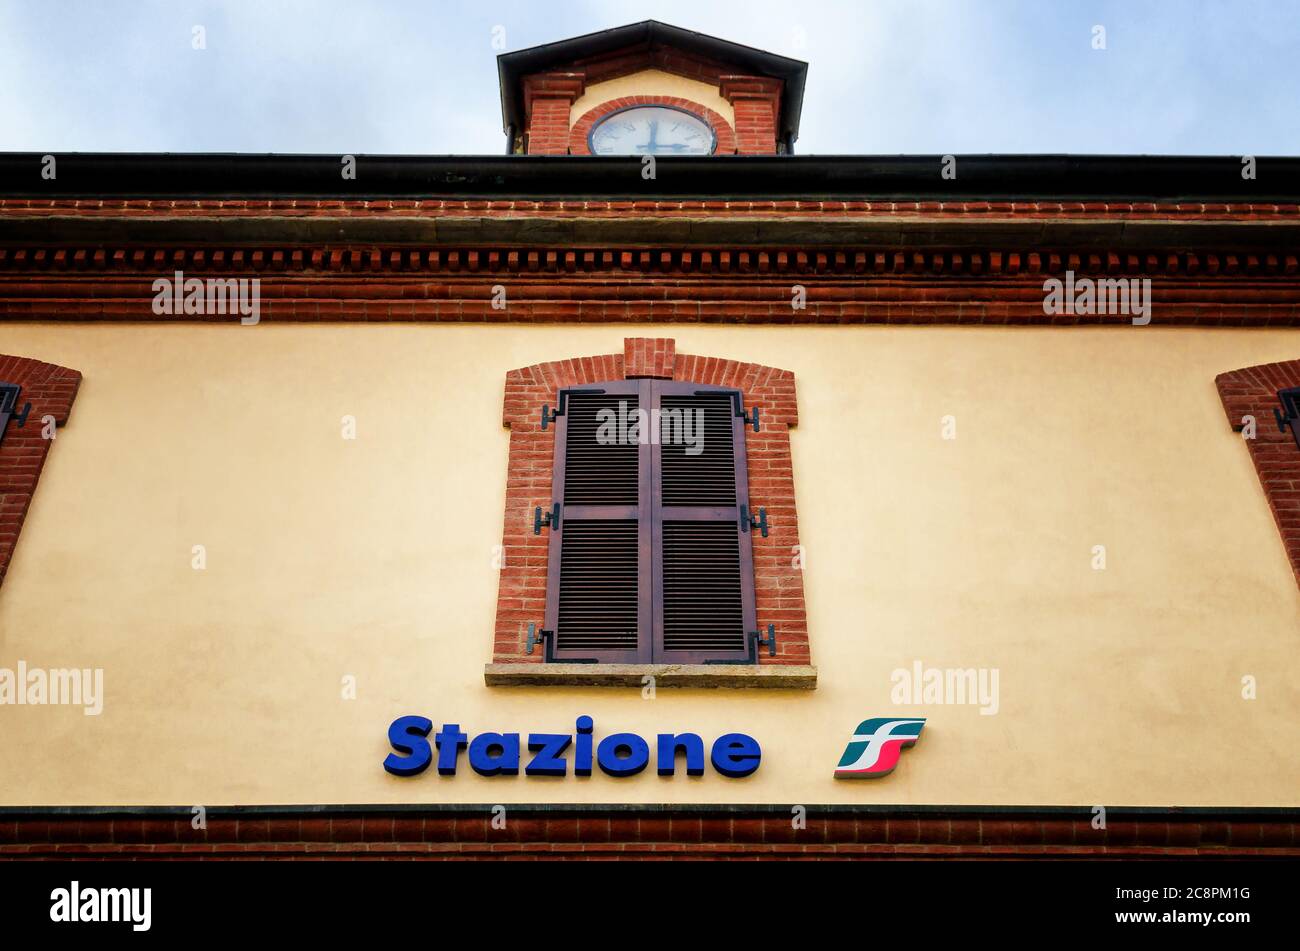 ALBA, ITALIE - 18 DÉCEMBRE 2017 : façade d'une gare historique italienne (stazione) avec le logo de Ferrovie dello Stato (les chemins de fer nationaux c Banque D'Images